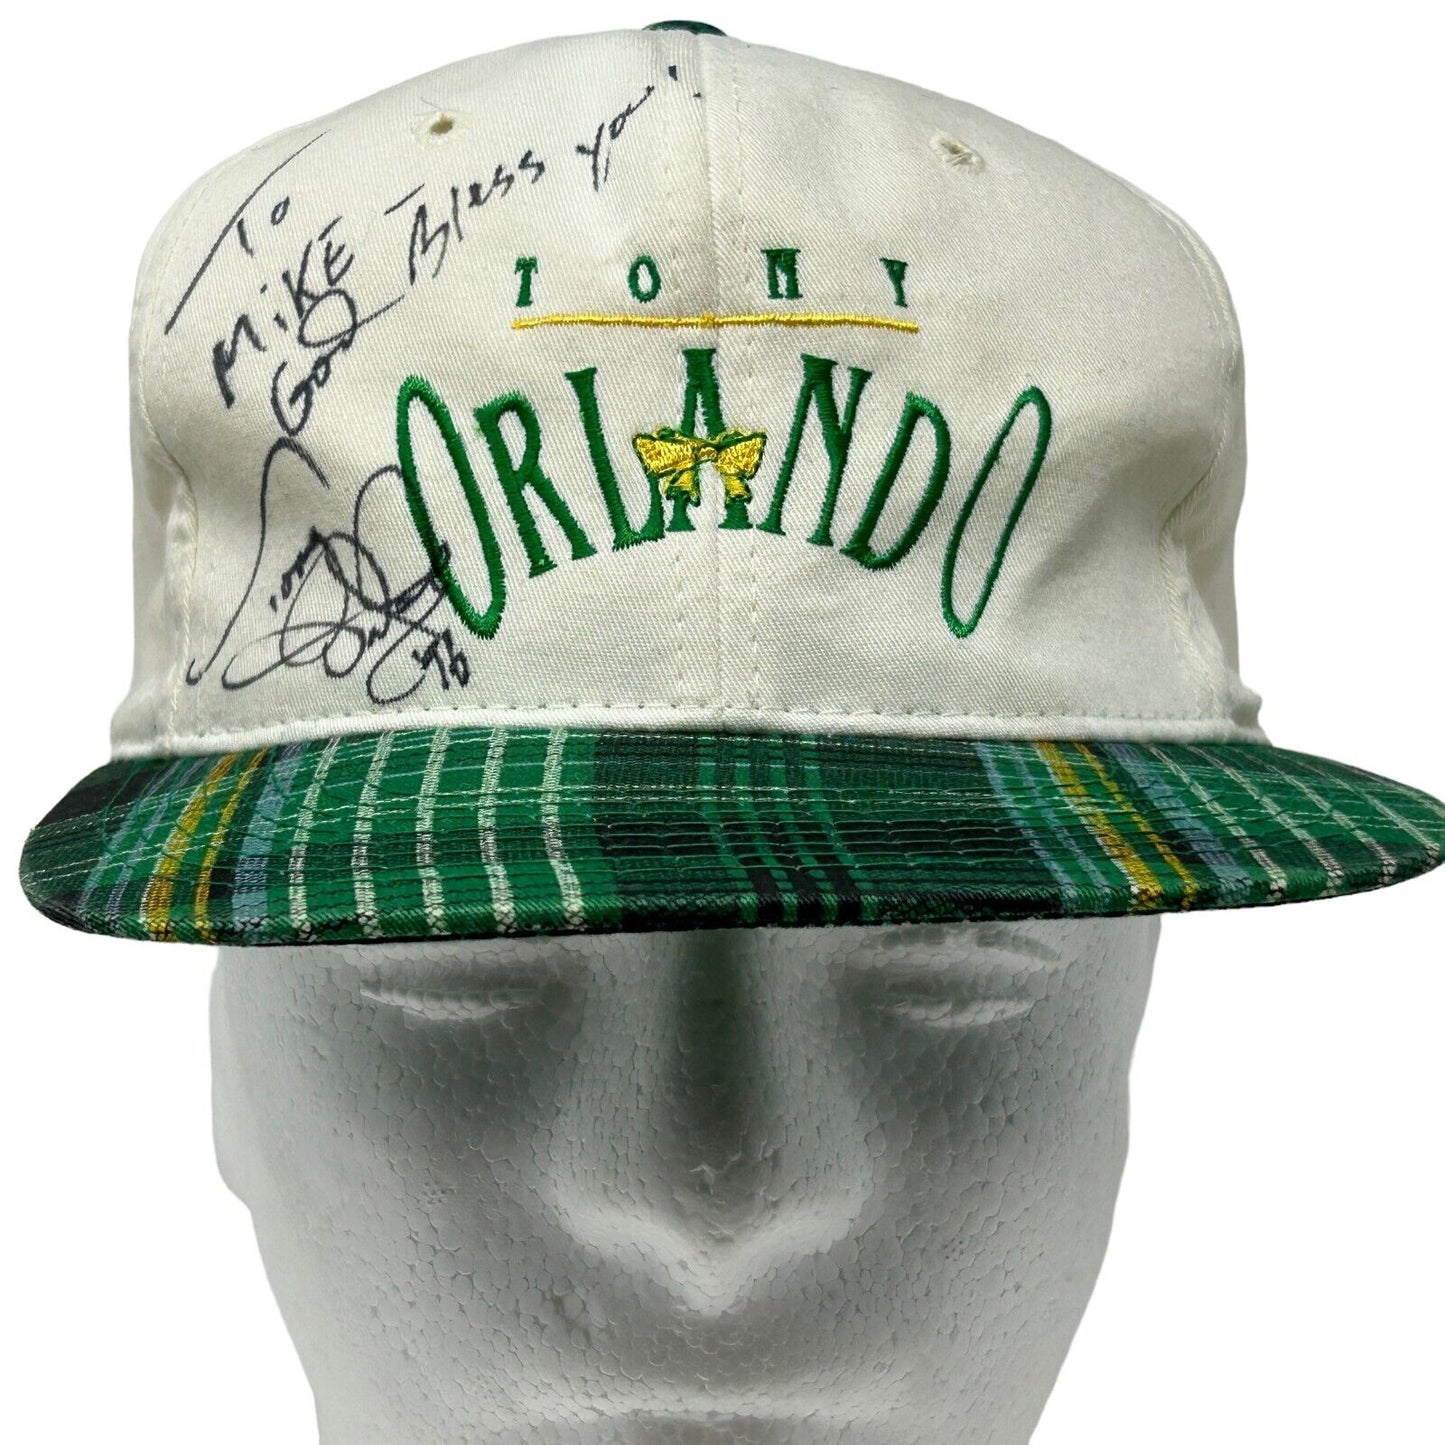 Tony Orlando Autographed Hat Vintage 90s White Signed Mike Snapback Baseball Cap